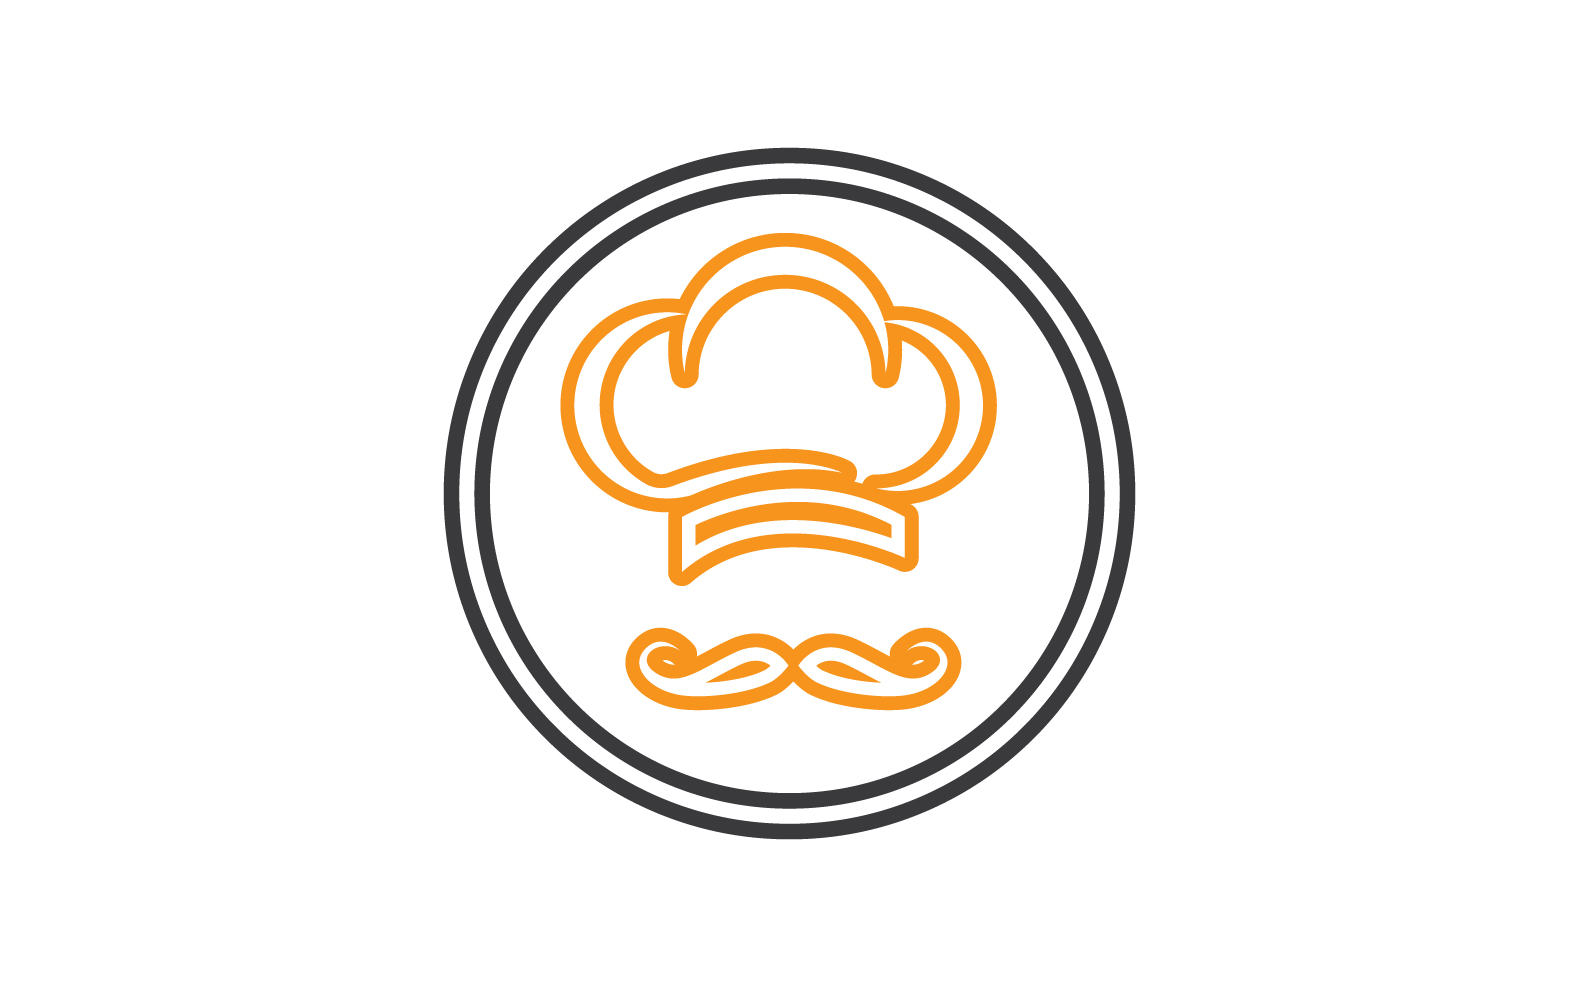 A chef hat logo on Craiyon